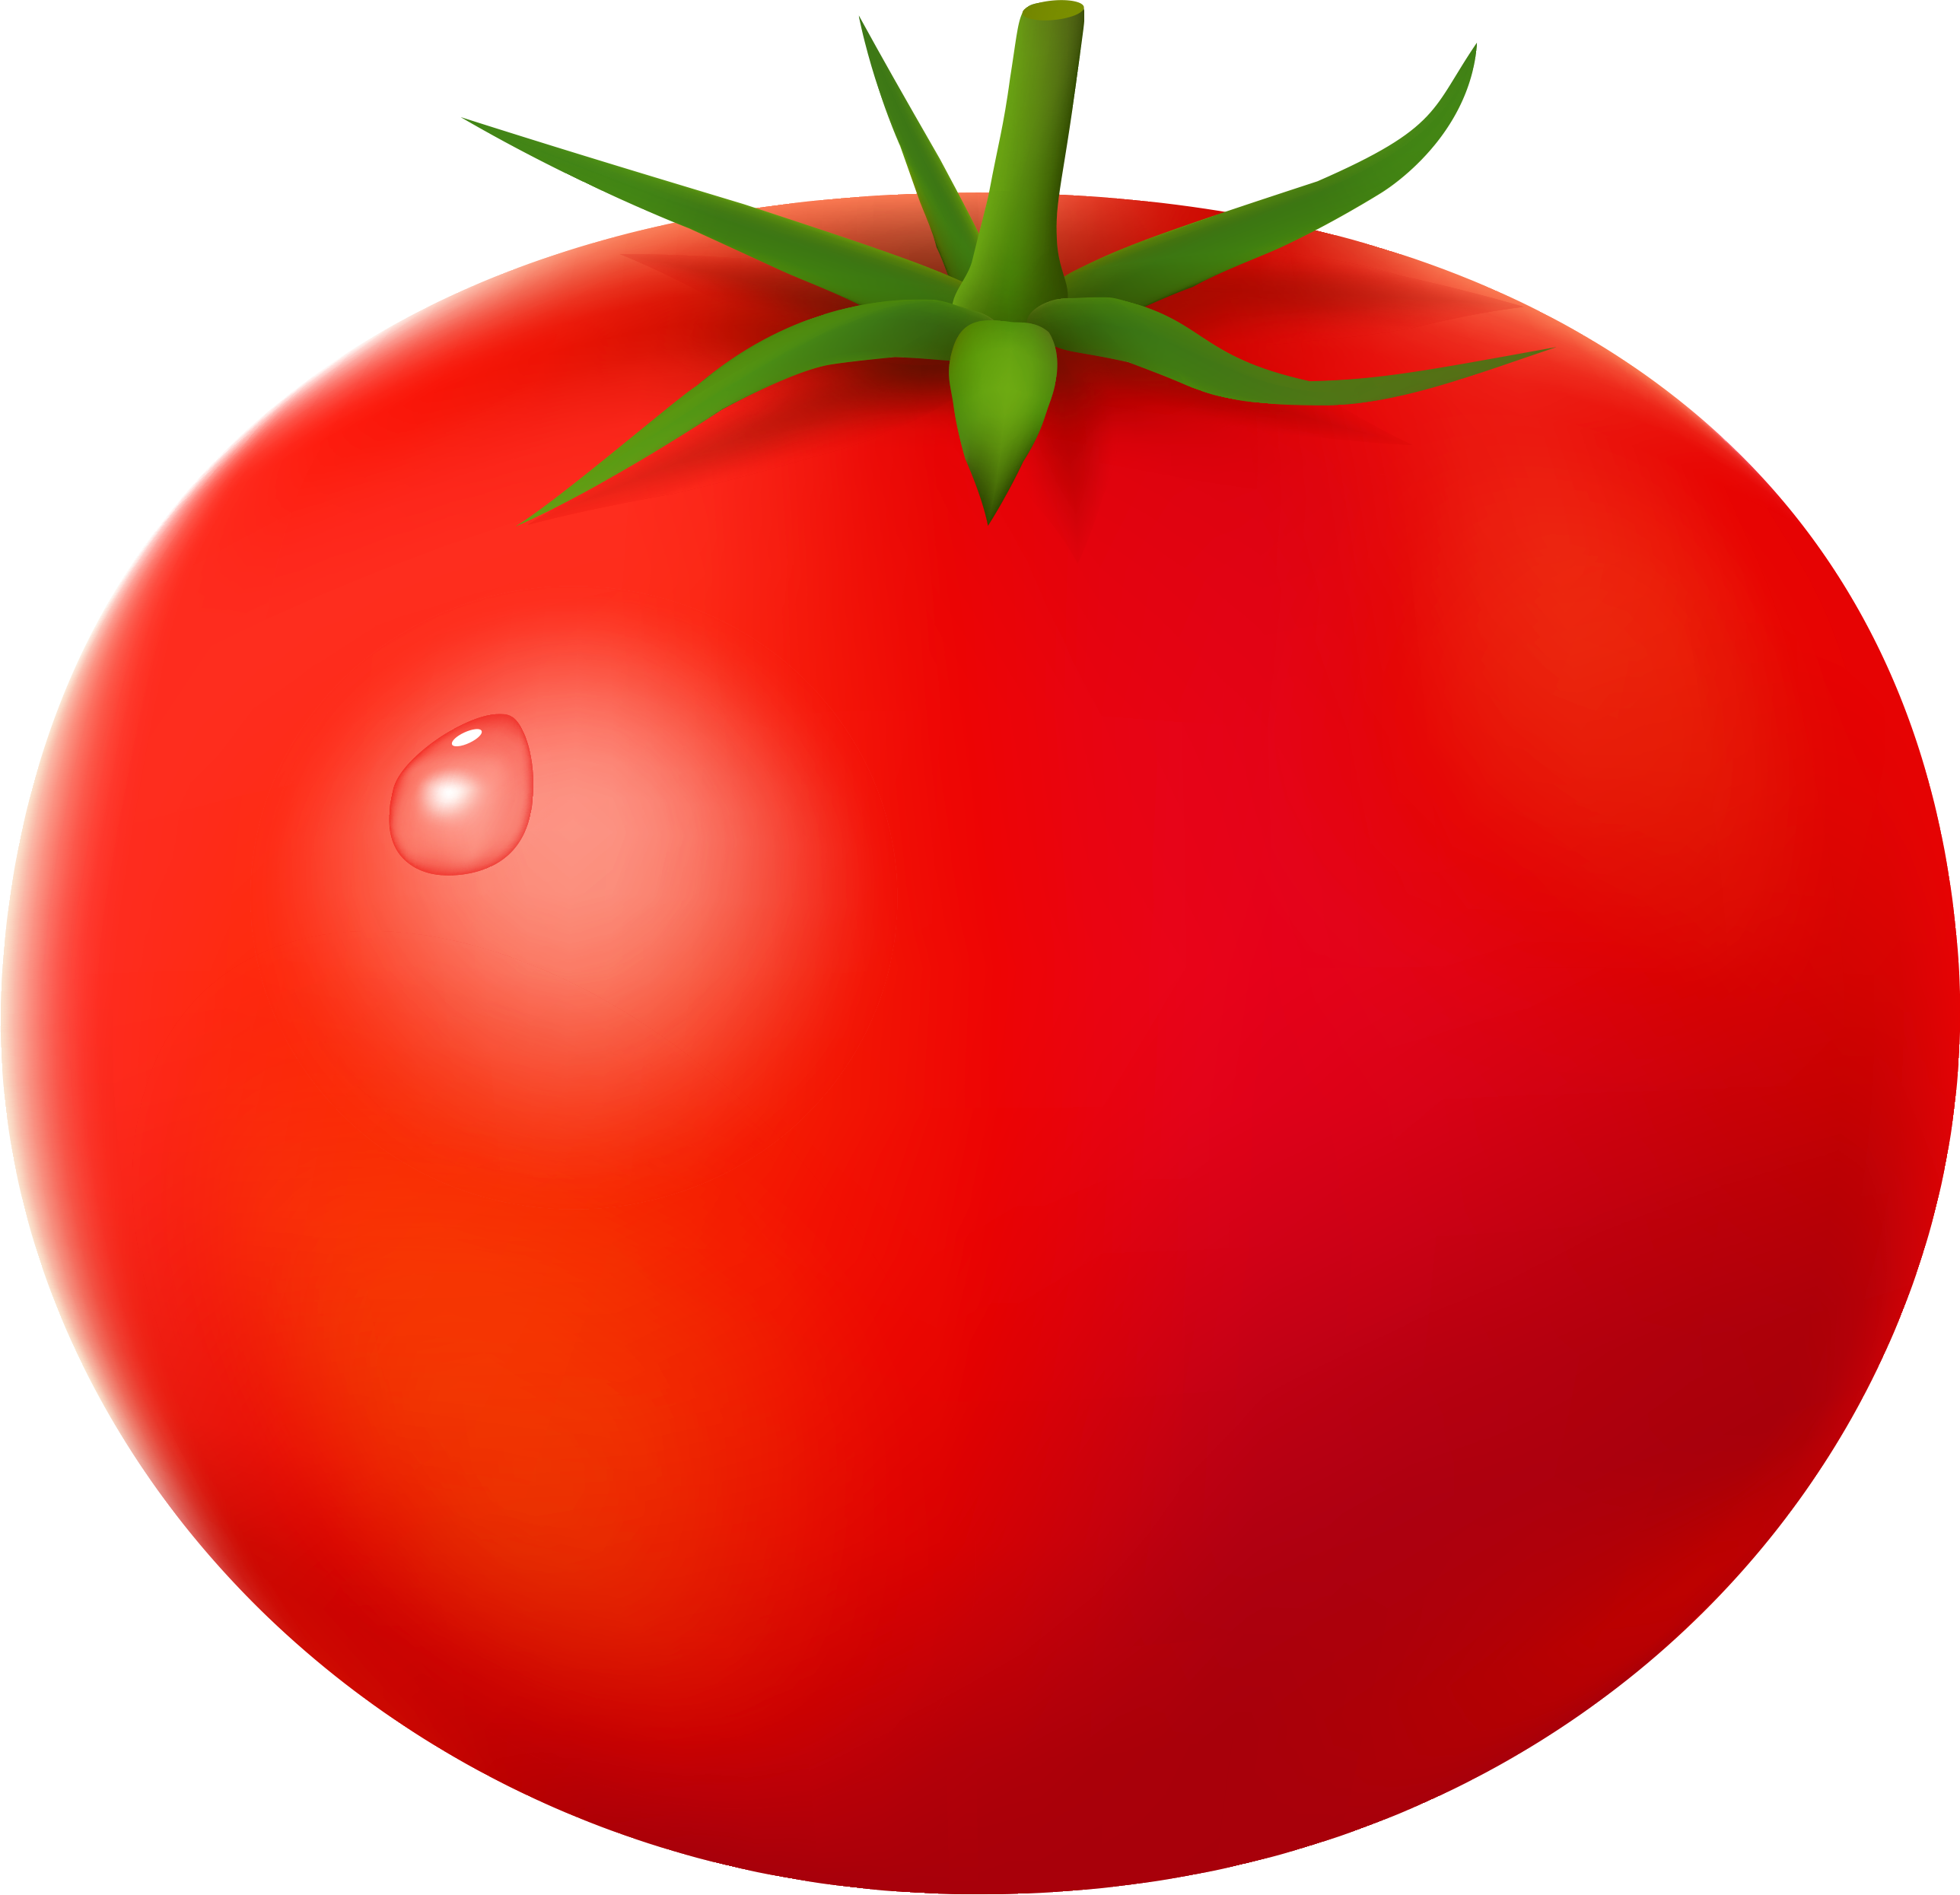 Tomates rouges